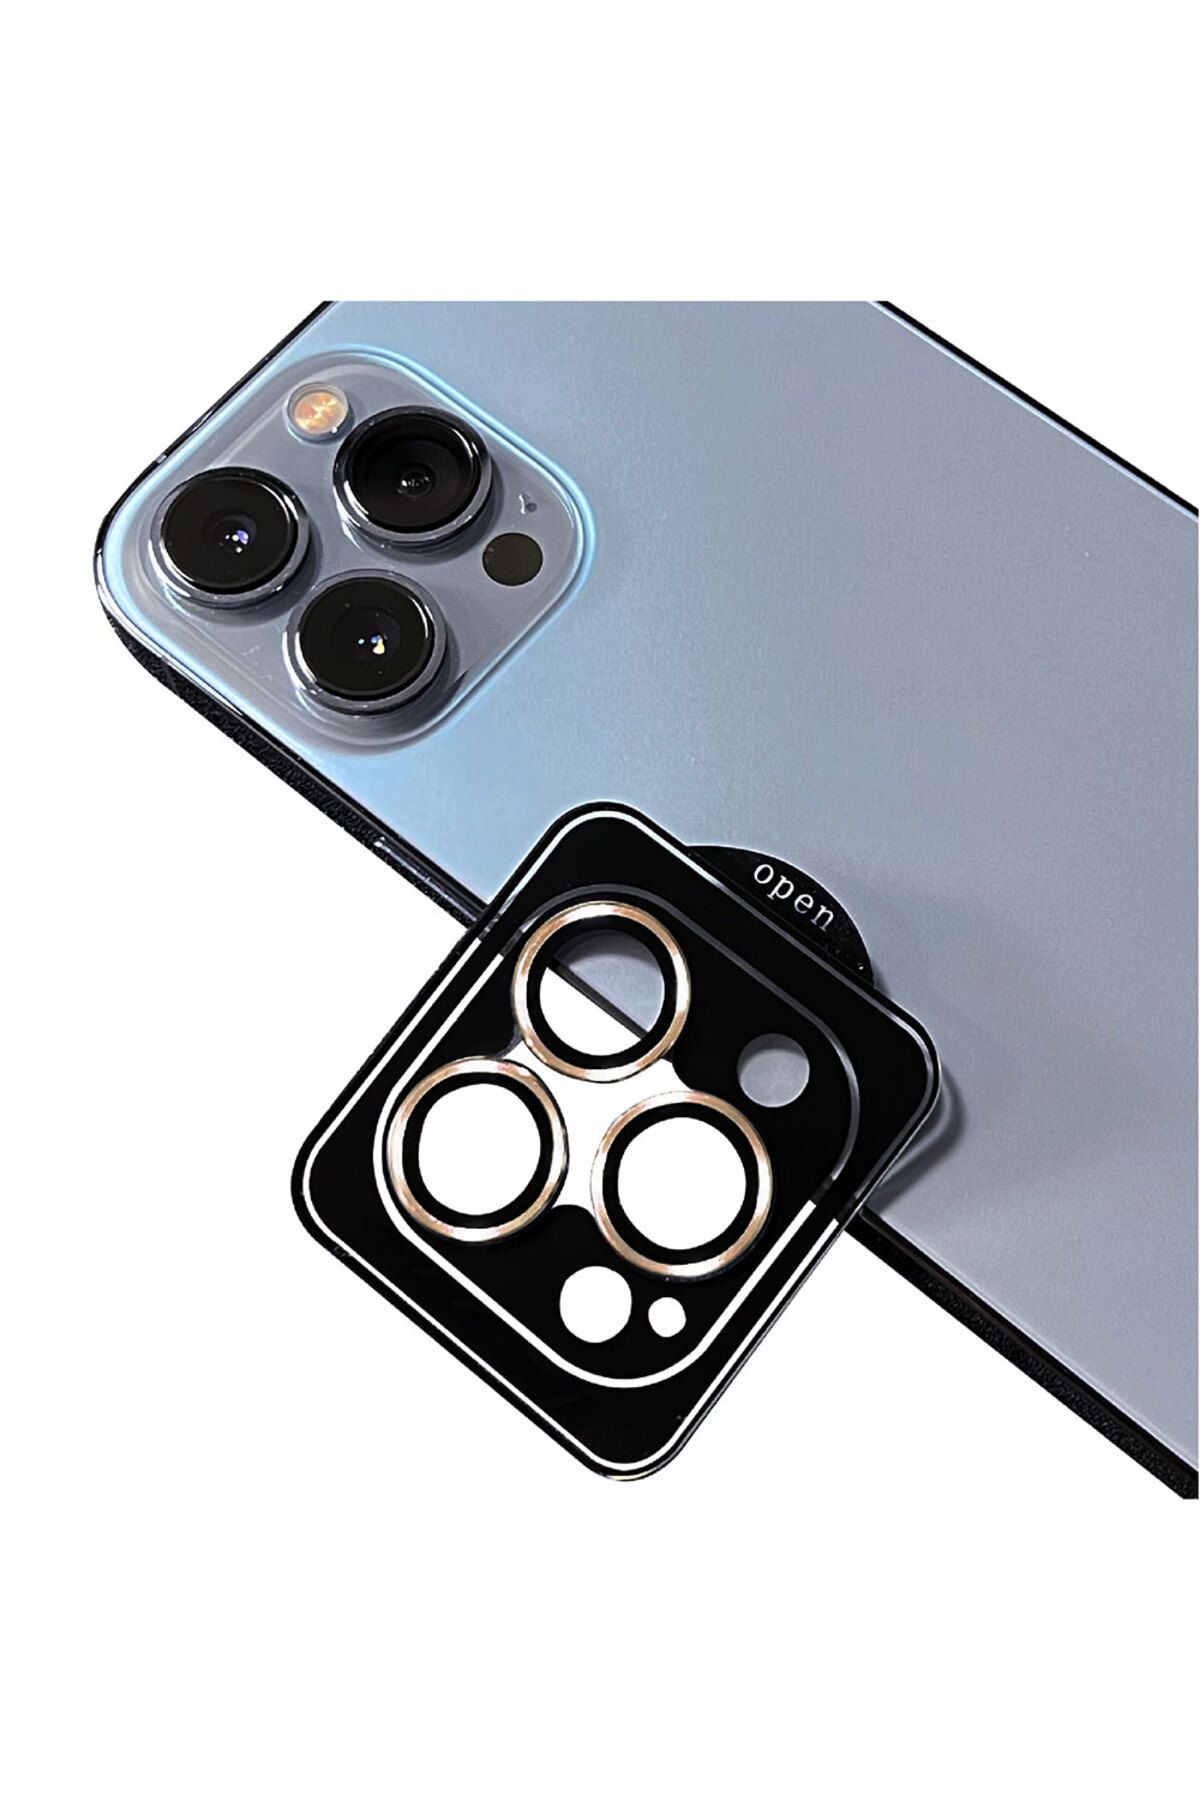 HEPTEKİLETİŞİM Iphone 11 Pro Max Kamera Lens Koruyucu Renkli Tasarım Kolay Takma Aparatlı (CL-09)